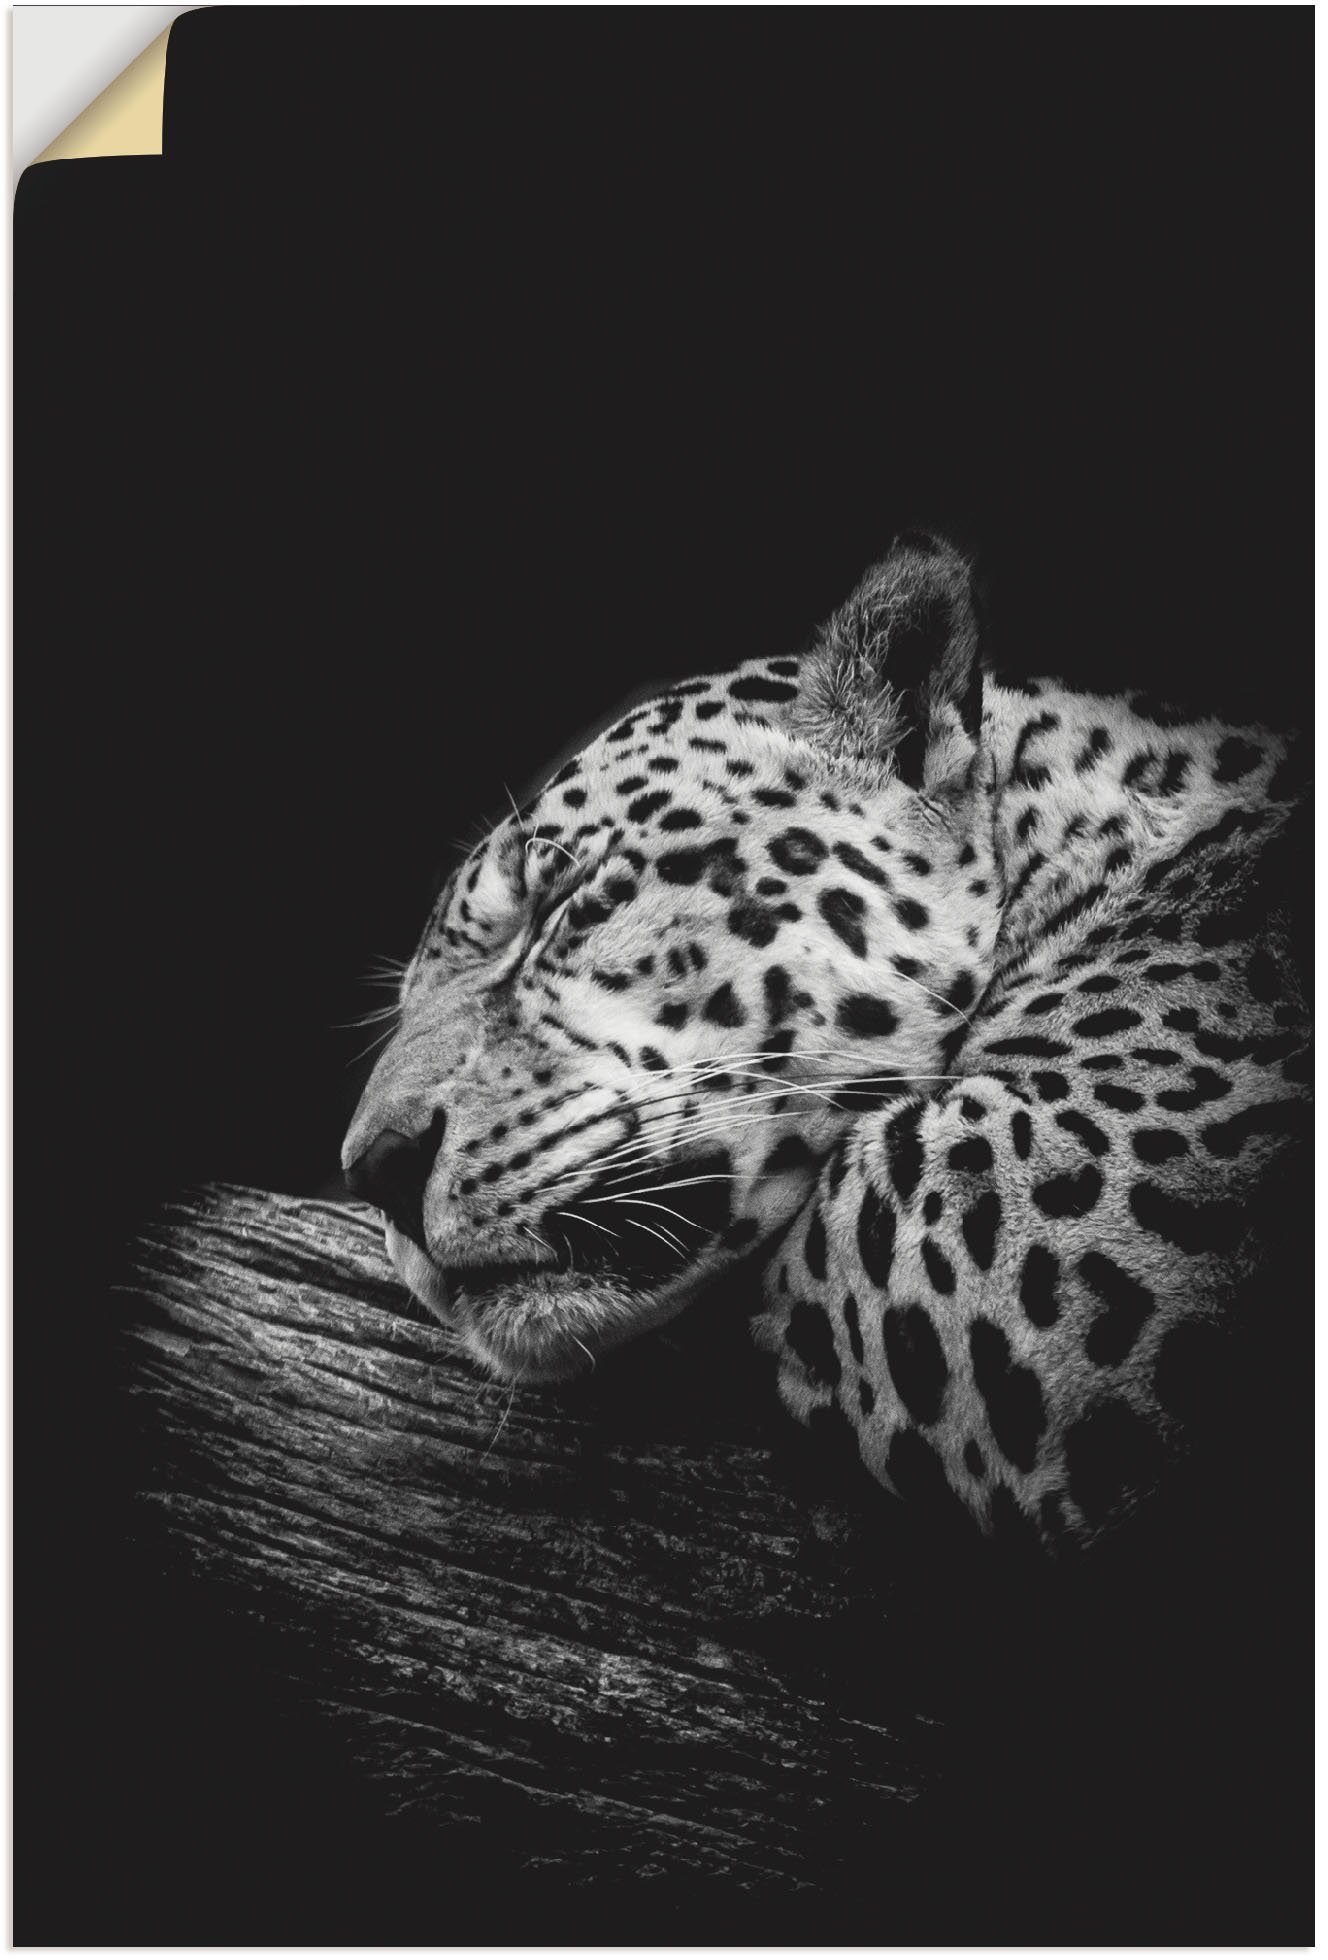 Artland Artprint Der schlafende Jaguar in vele afmetingen & productsoorten - artprint van aluminium / artprint voor buiten, artprint op linnen, poster, muursticker / wandfolie ook